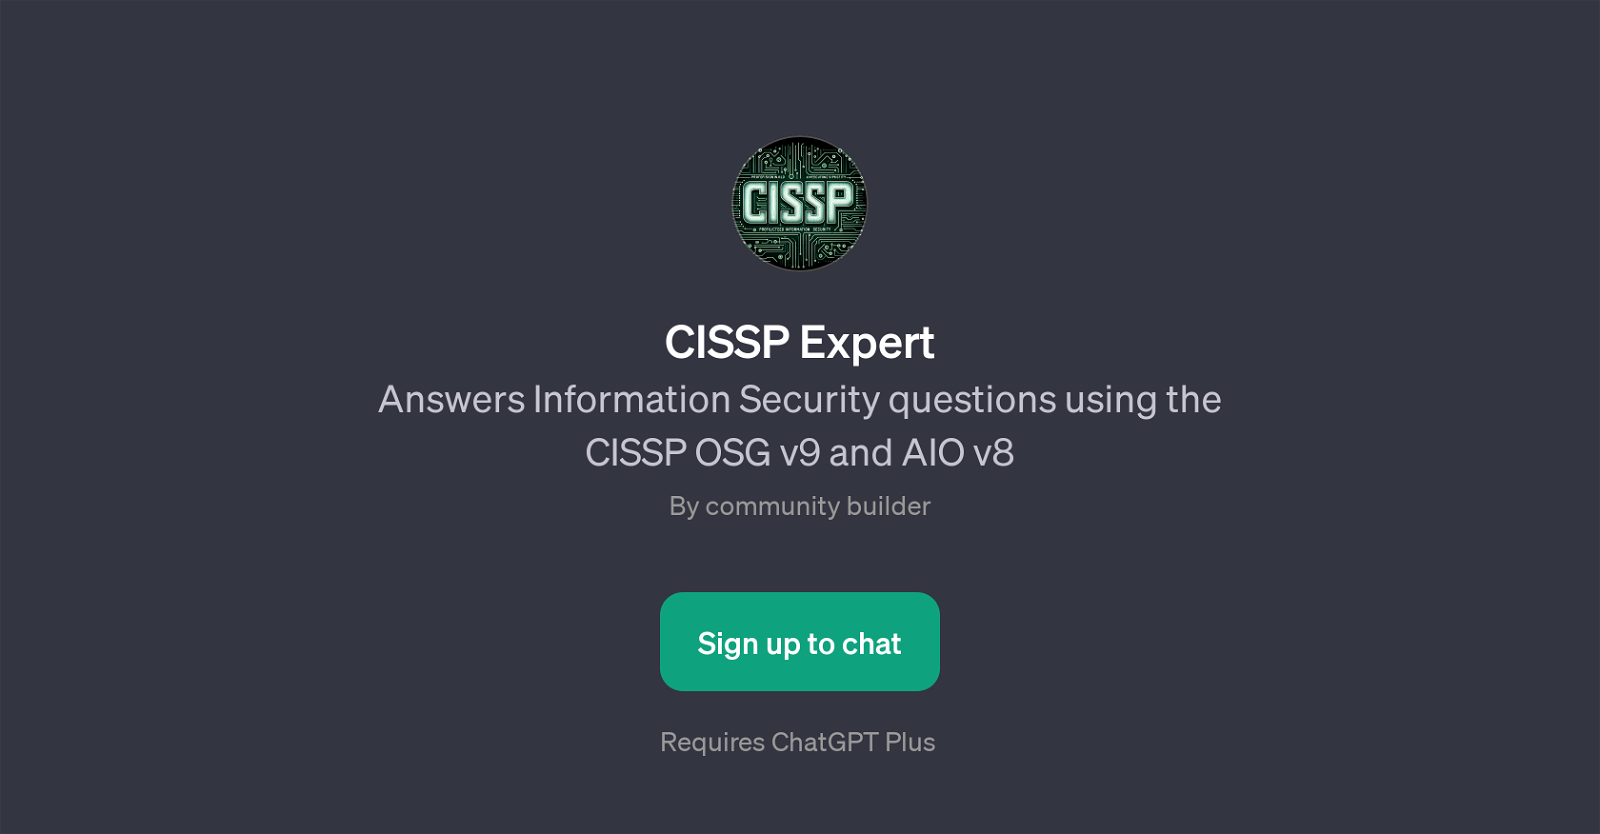 CISSP Expert website